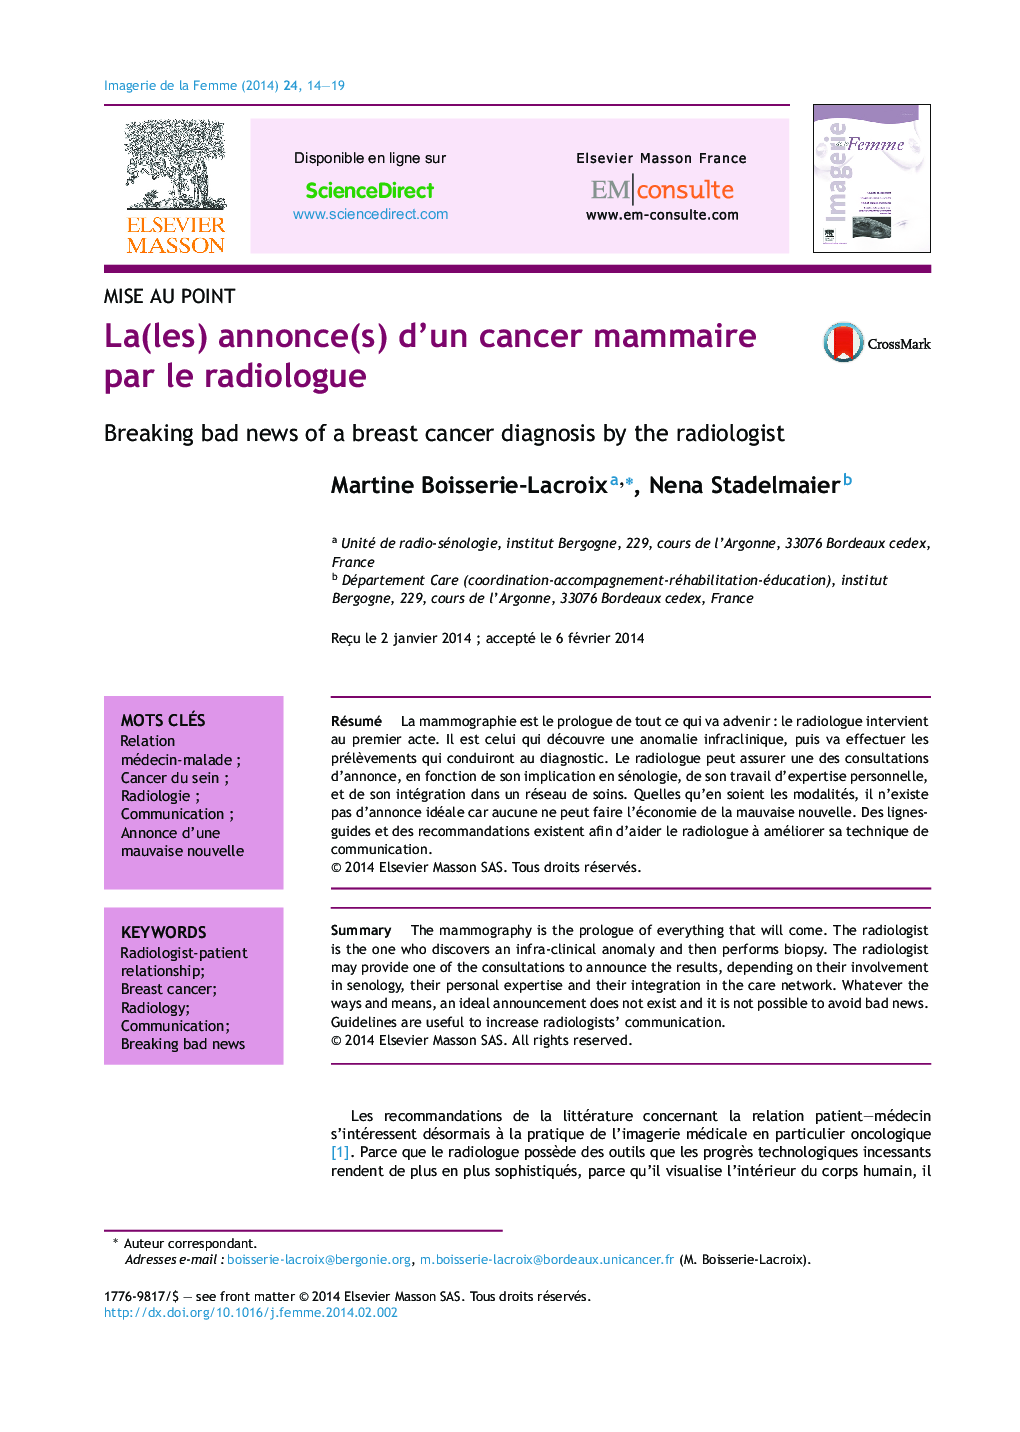 La(les) annonce(s) d'un cancer mammaire par le radiologue